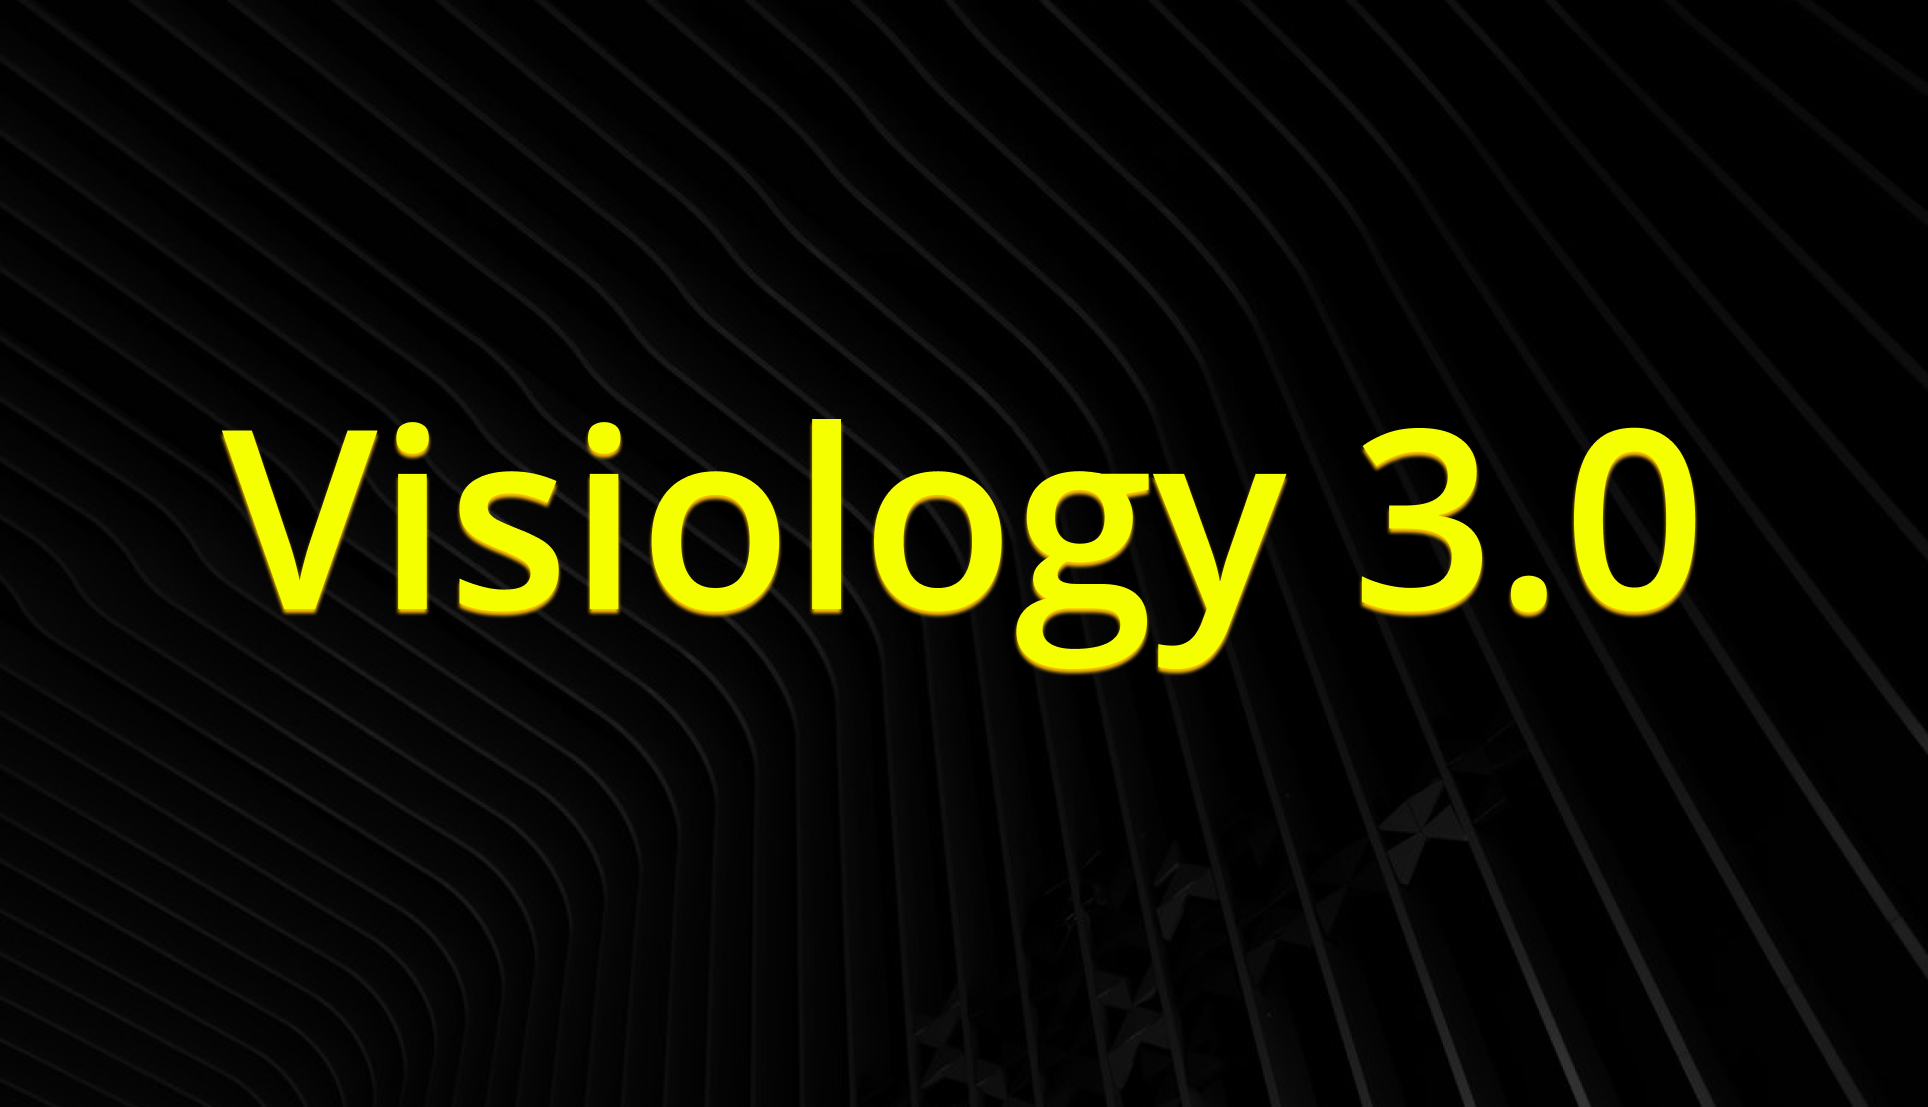 Visiology 3.0: реальная замена Microsoft Power BI или наш дерзкий маркетинговый ход? - 4